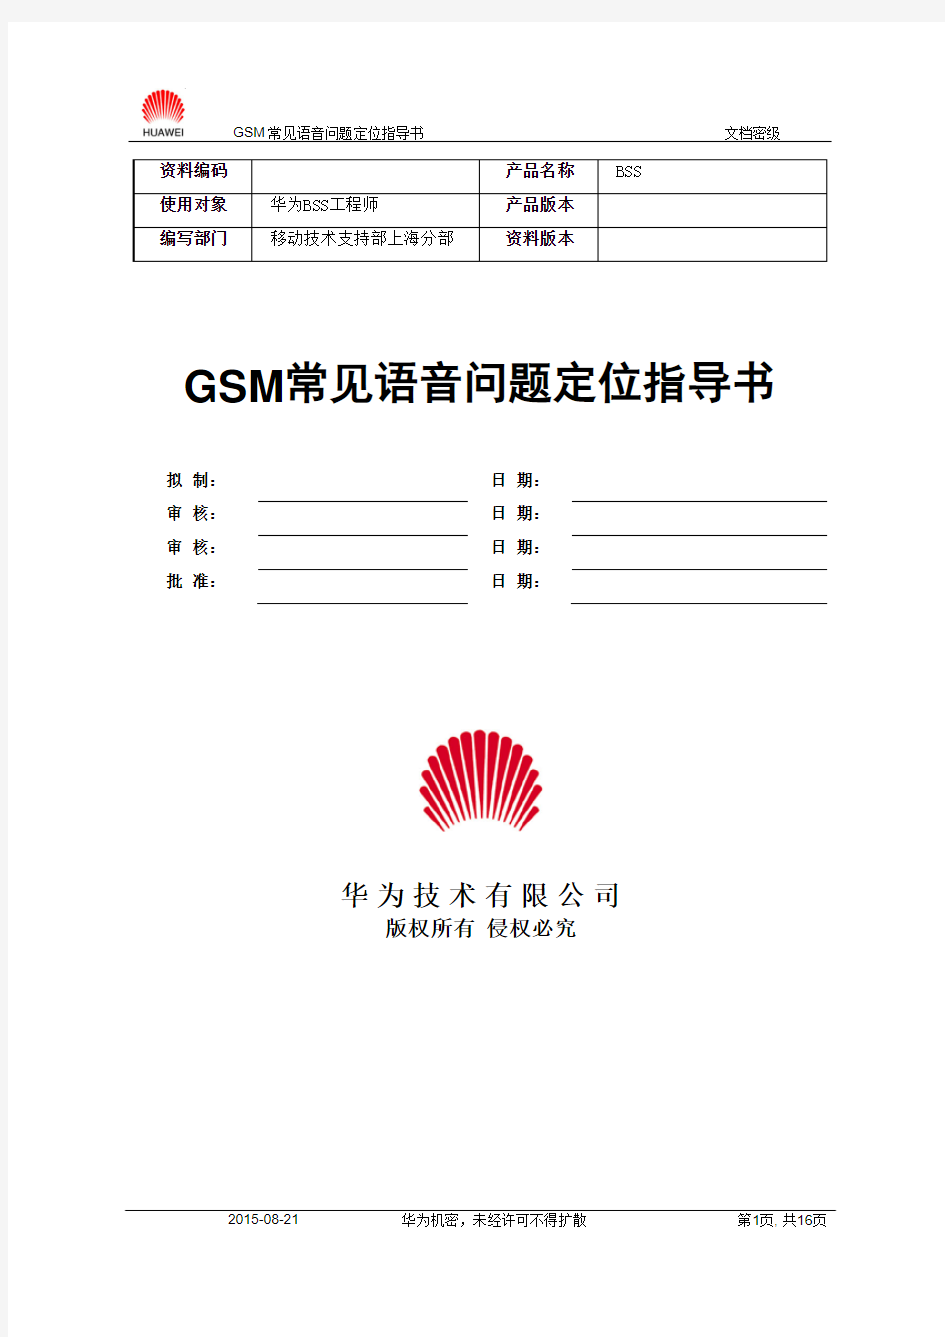 GSM常见语音问题定位指导书-20020321-A-1.0